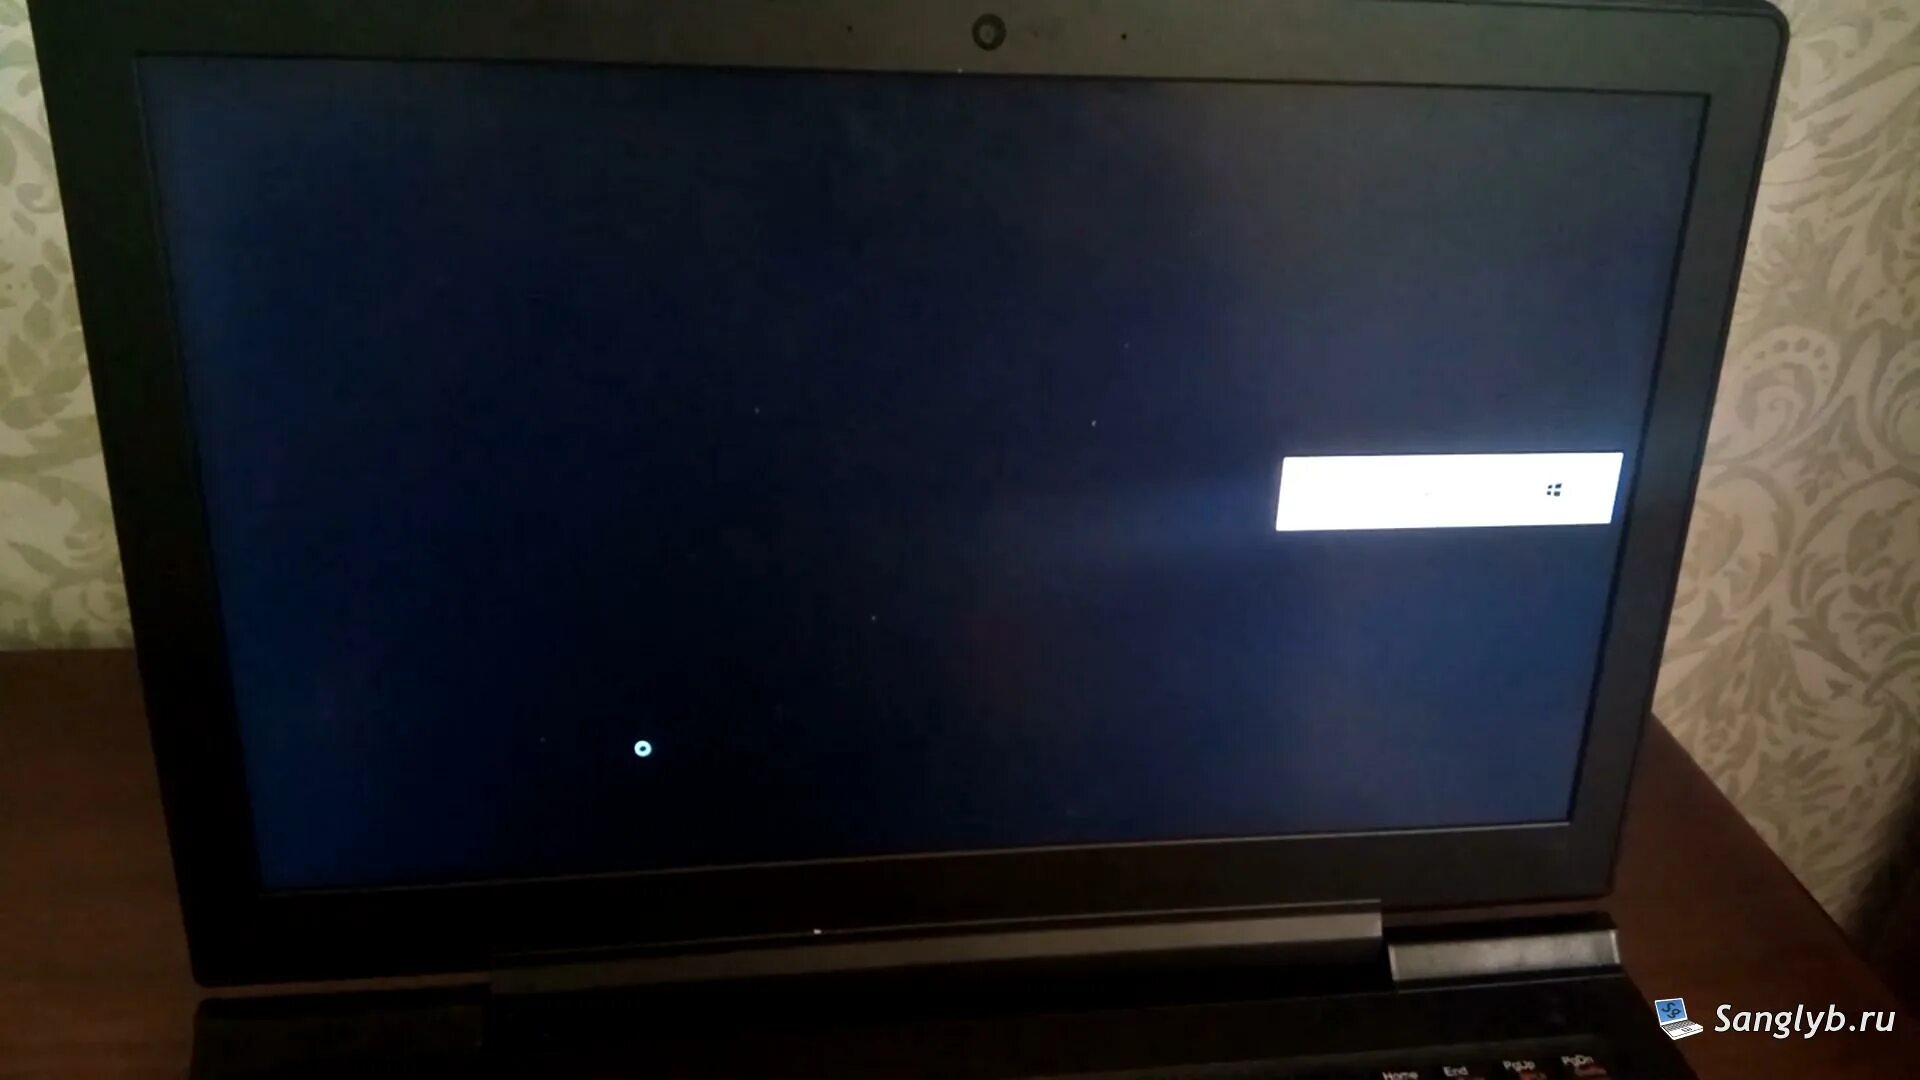 Высвечивается черный экран. Чёрный экран при включении ноутбука. Герои м6 черный экран. Герои меча и магии 6 черный экран при запуске Windows 10. Белый экран черный экран.